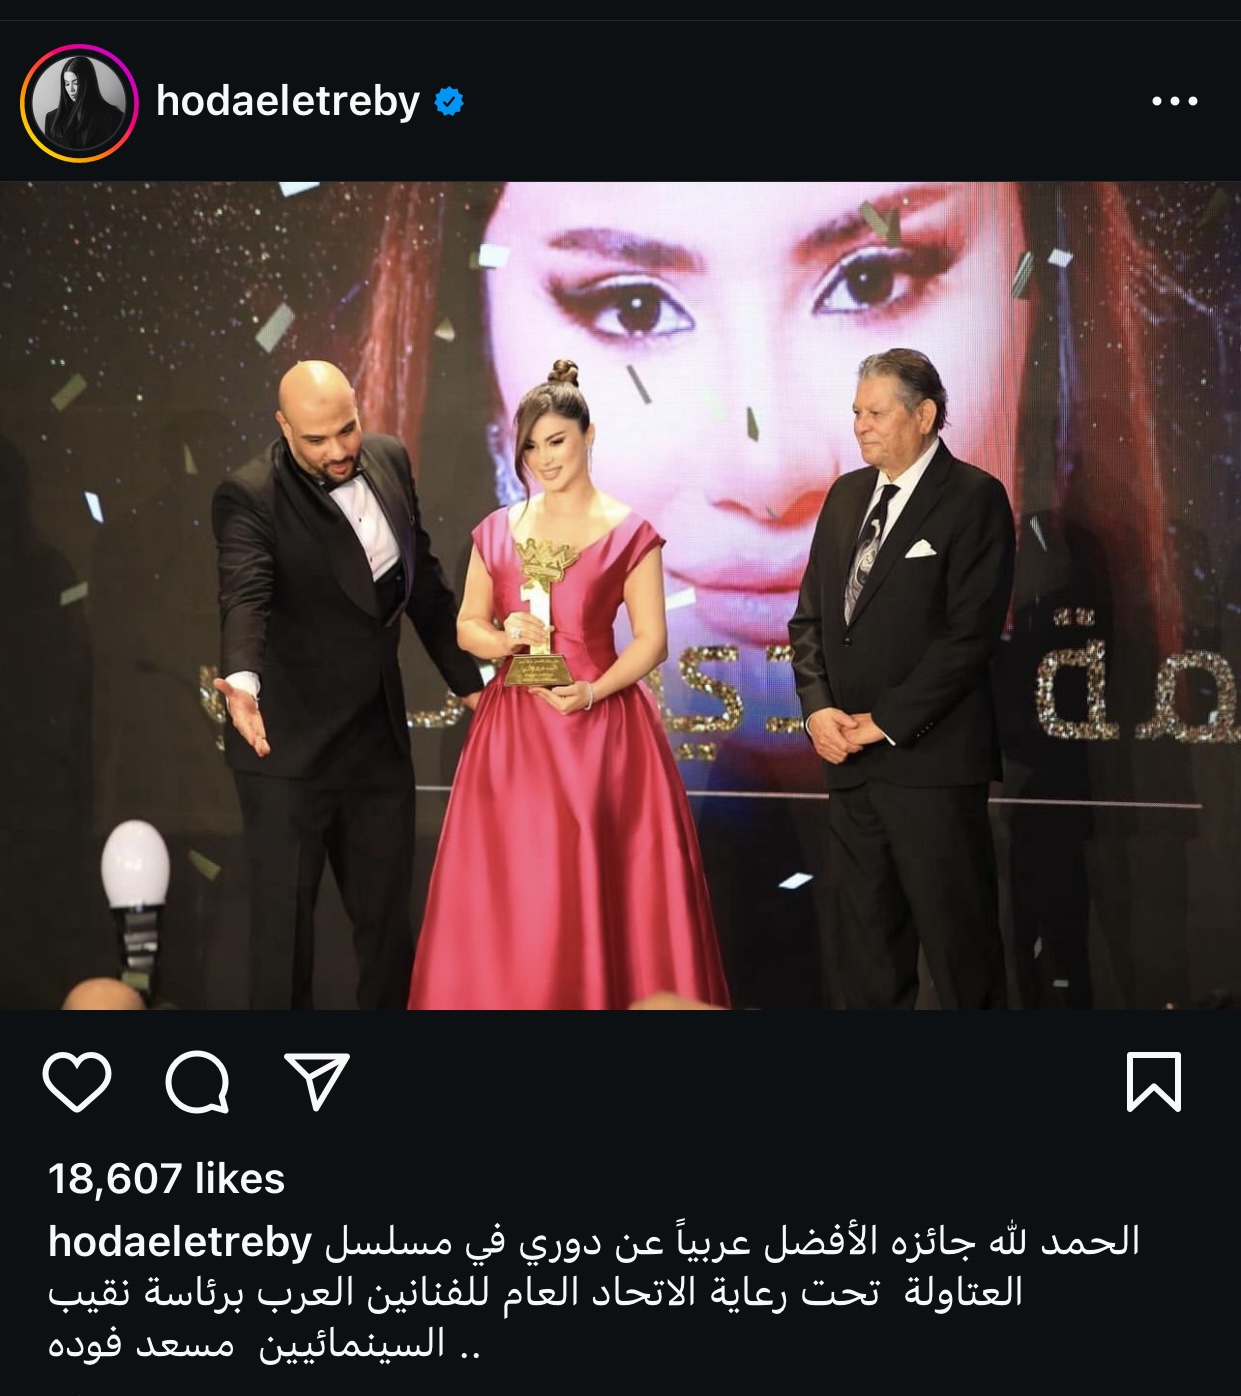 هدى الإتربي تحتفل بتكريمها بجائزة الأفضل عربياً عن دورها في العتاولة 2